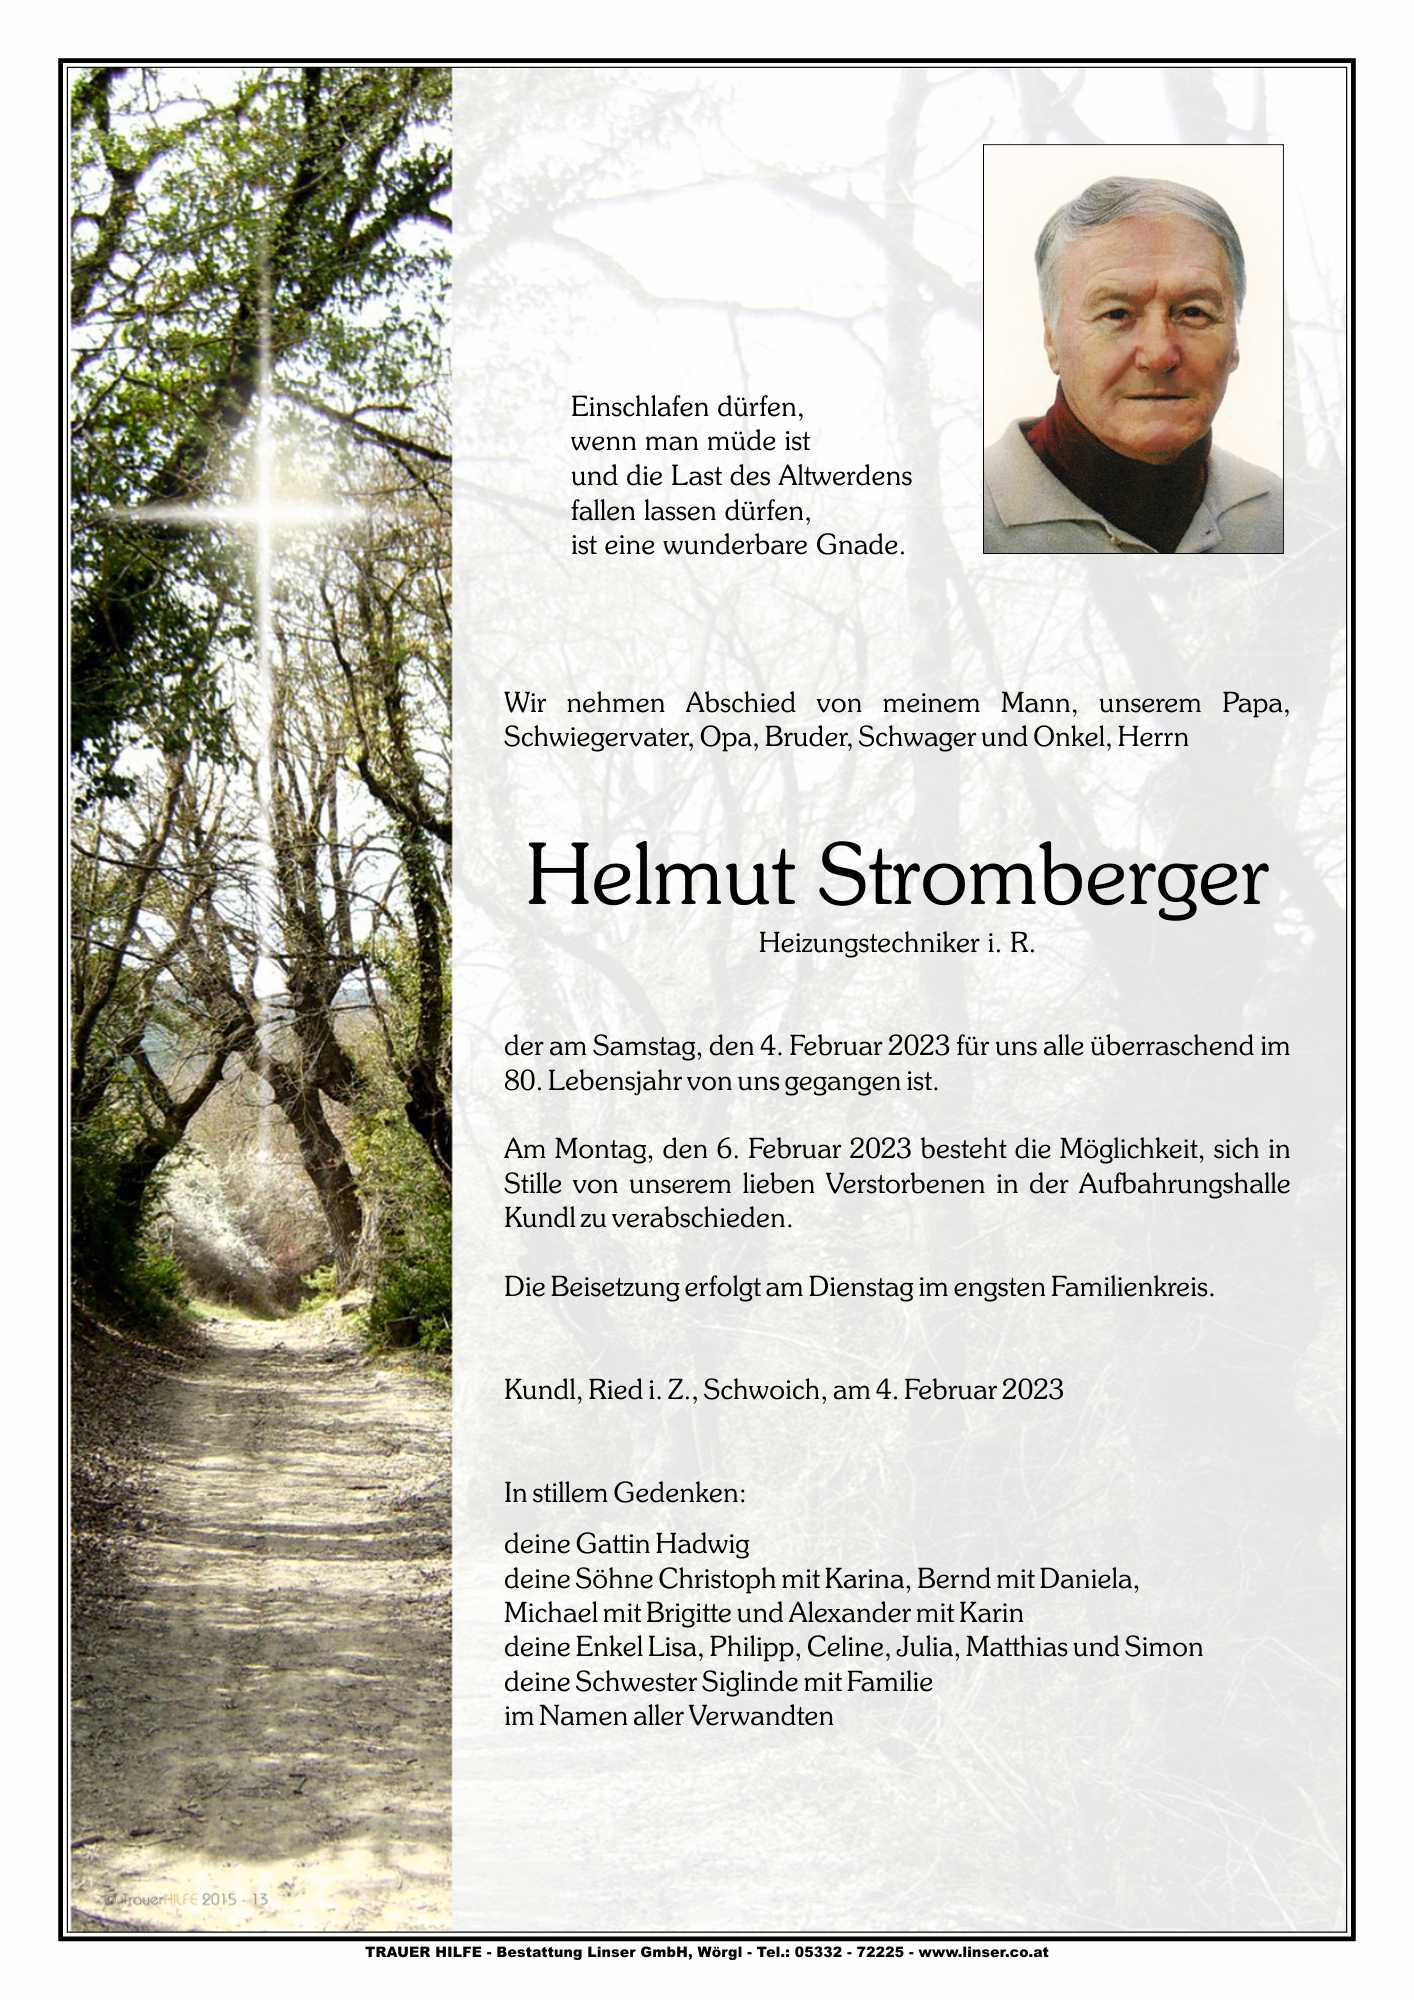 Helmut Stromberger